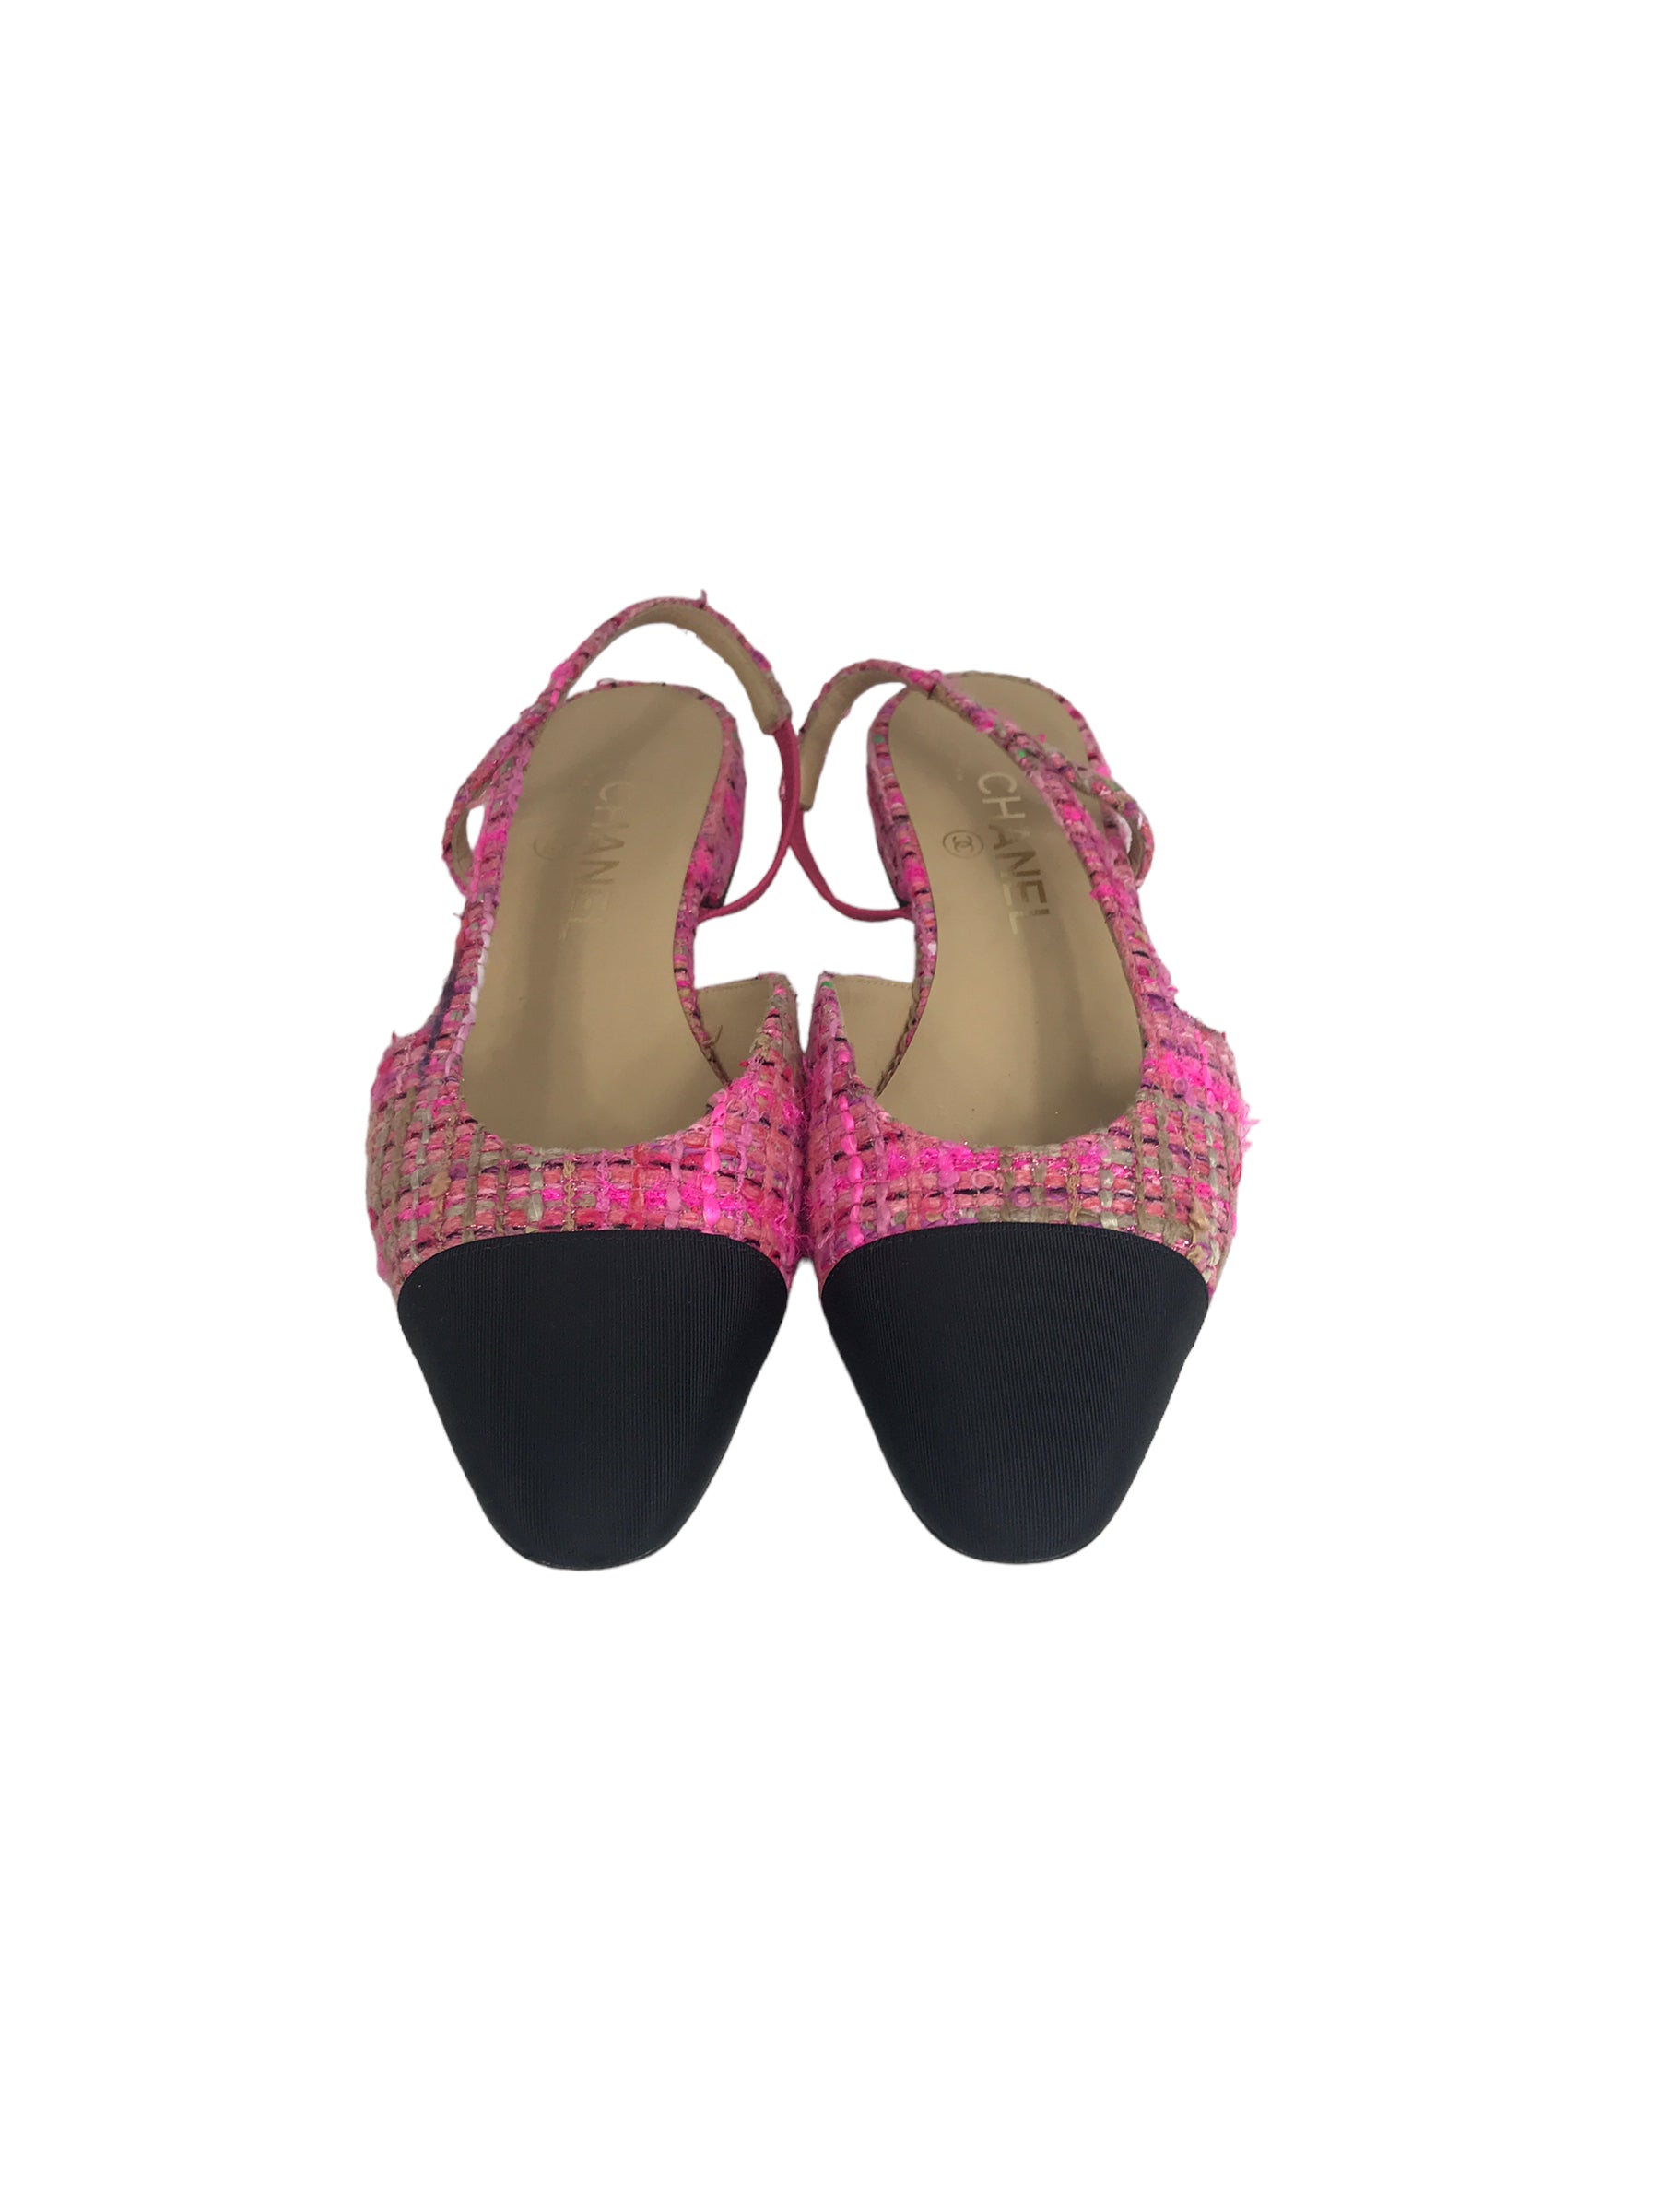 Chanel Pink Tweed & Black Kitten Heel Slingbacks